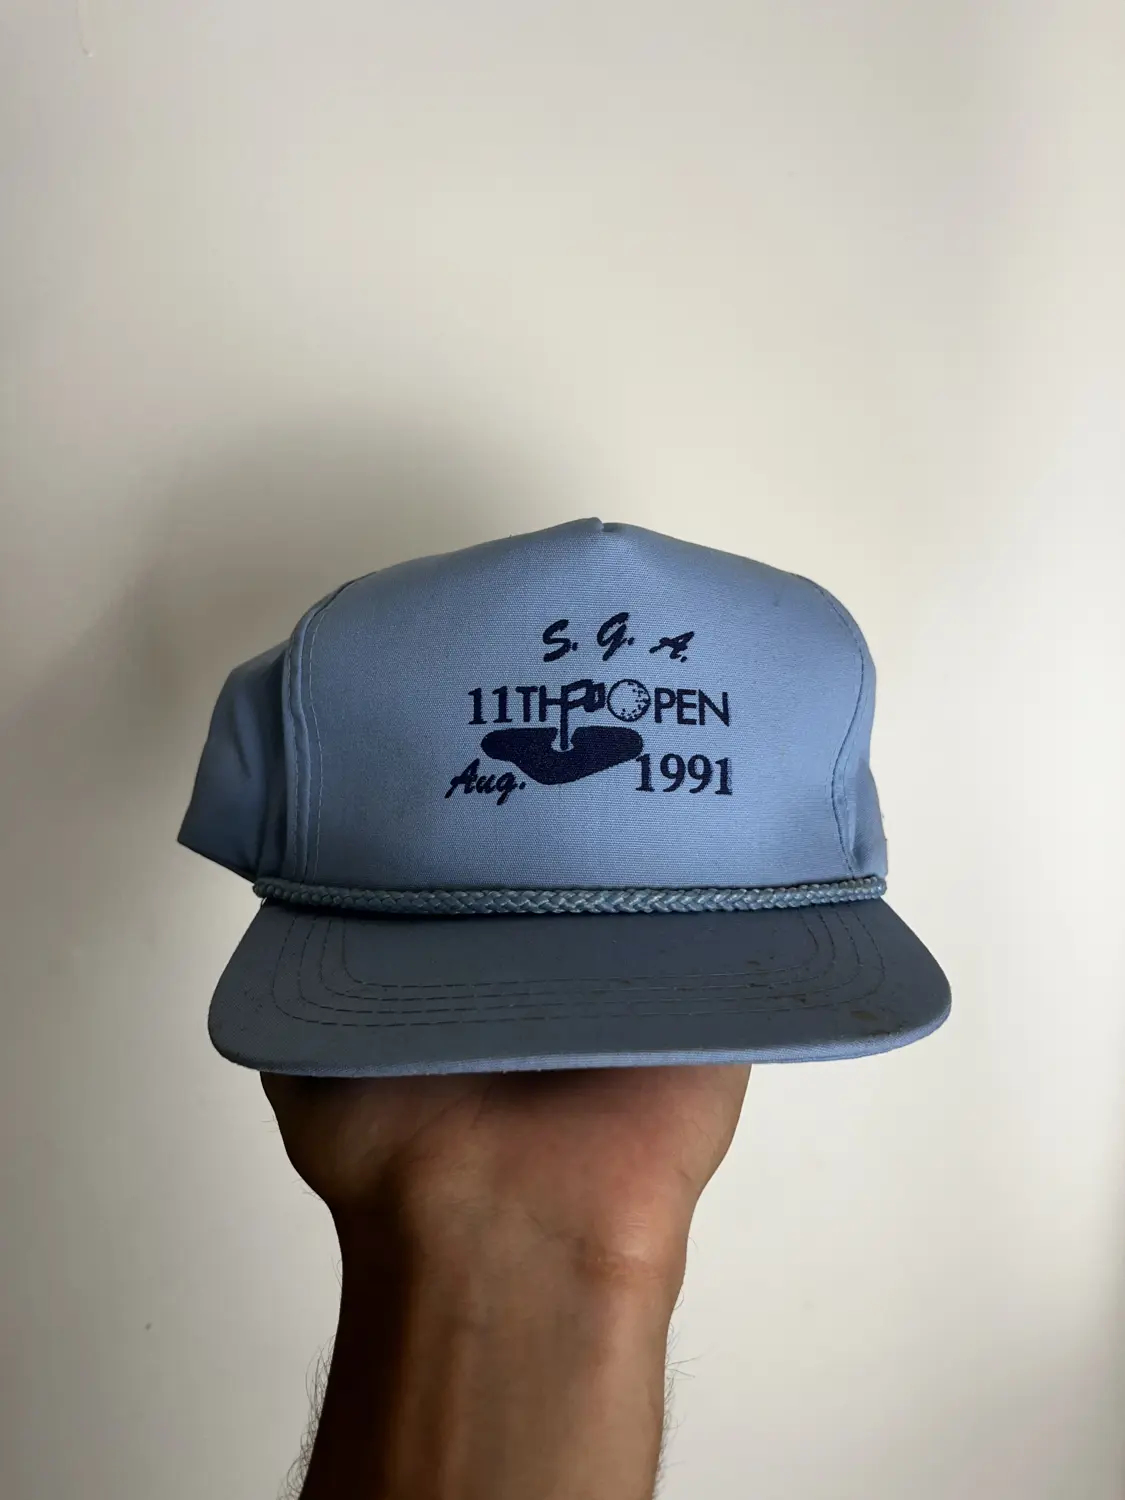 1991 S.G.A open golf hat